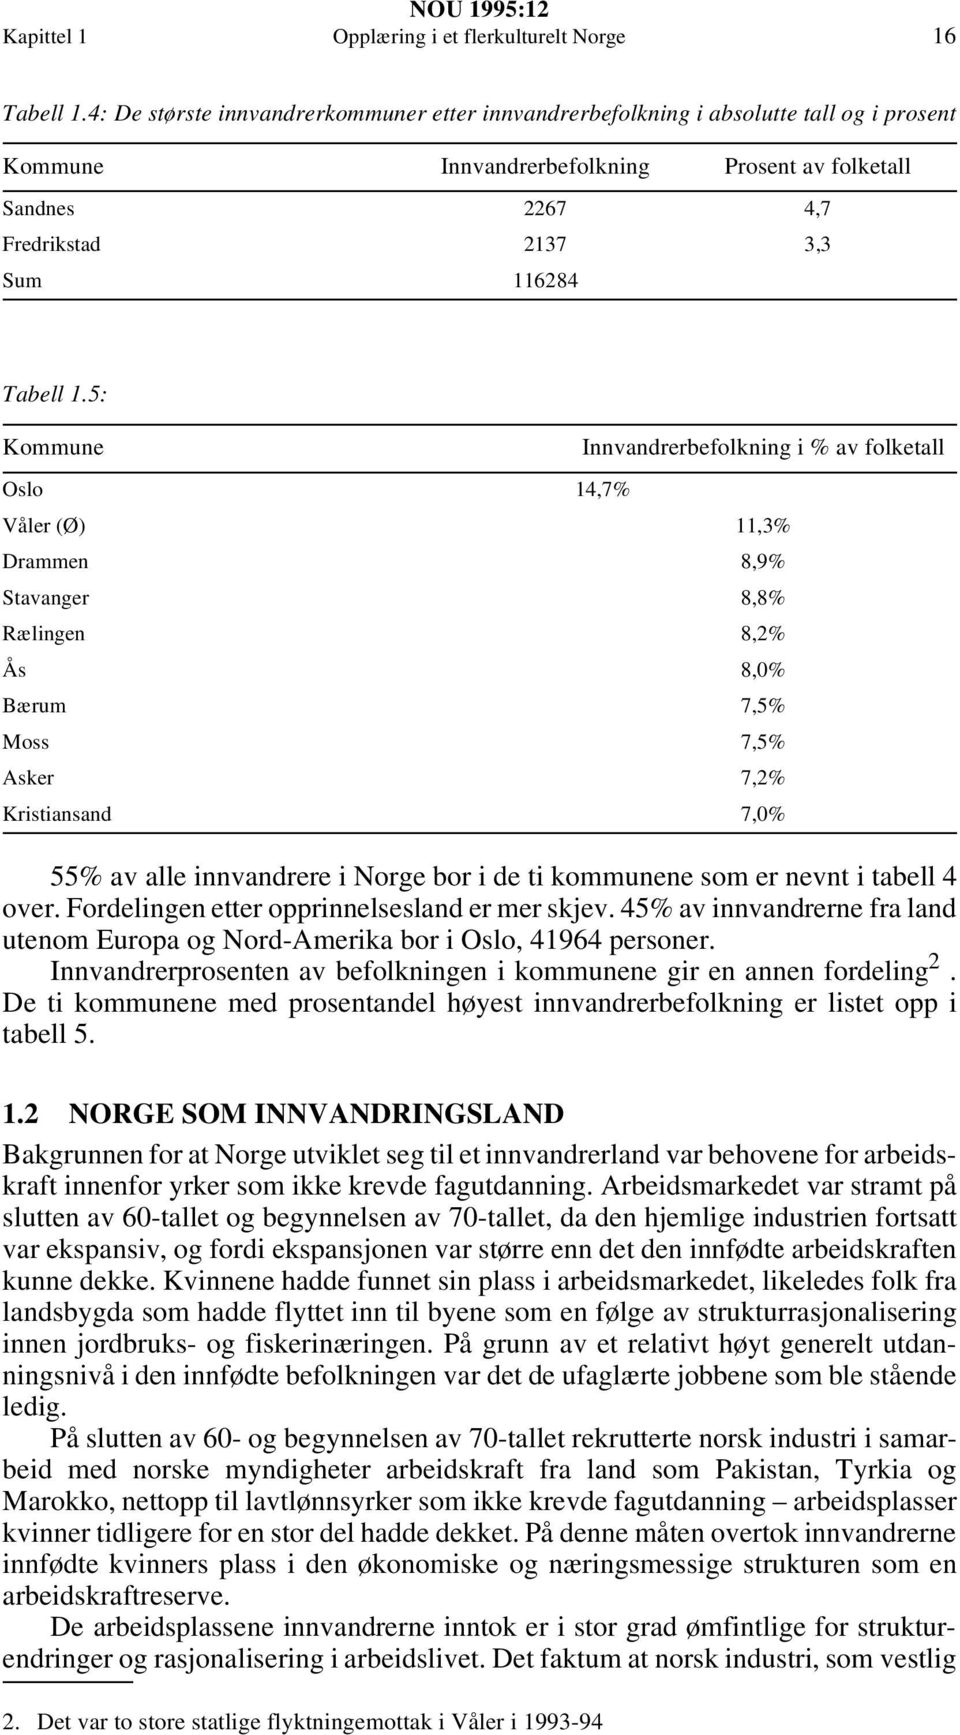 5: Kommune Innvandrerbefolkning i % av folketall Oslo 14,7% Våler (Ø) 11,3% Drammen 8,9% Stavanger 8,8% Rælingen 8,2% Ås 8,0% Bærum 7,5% Moss 7,5% Asker 7,2% Kristiansand 7,0% 55% av alle innvandrere